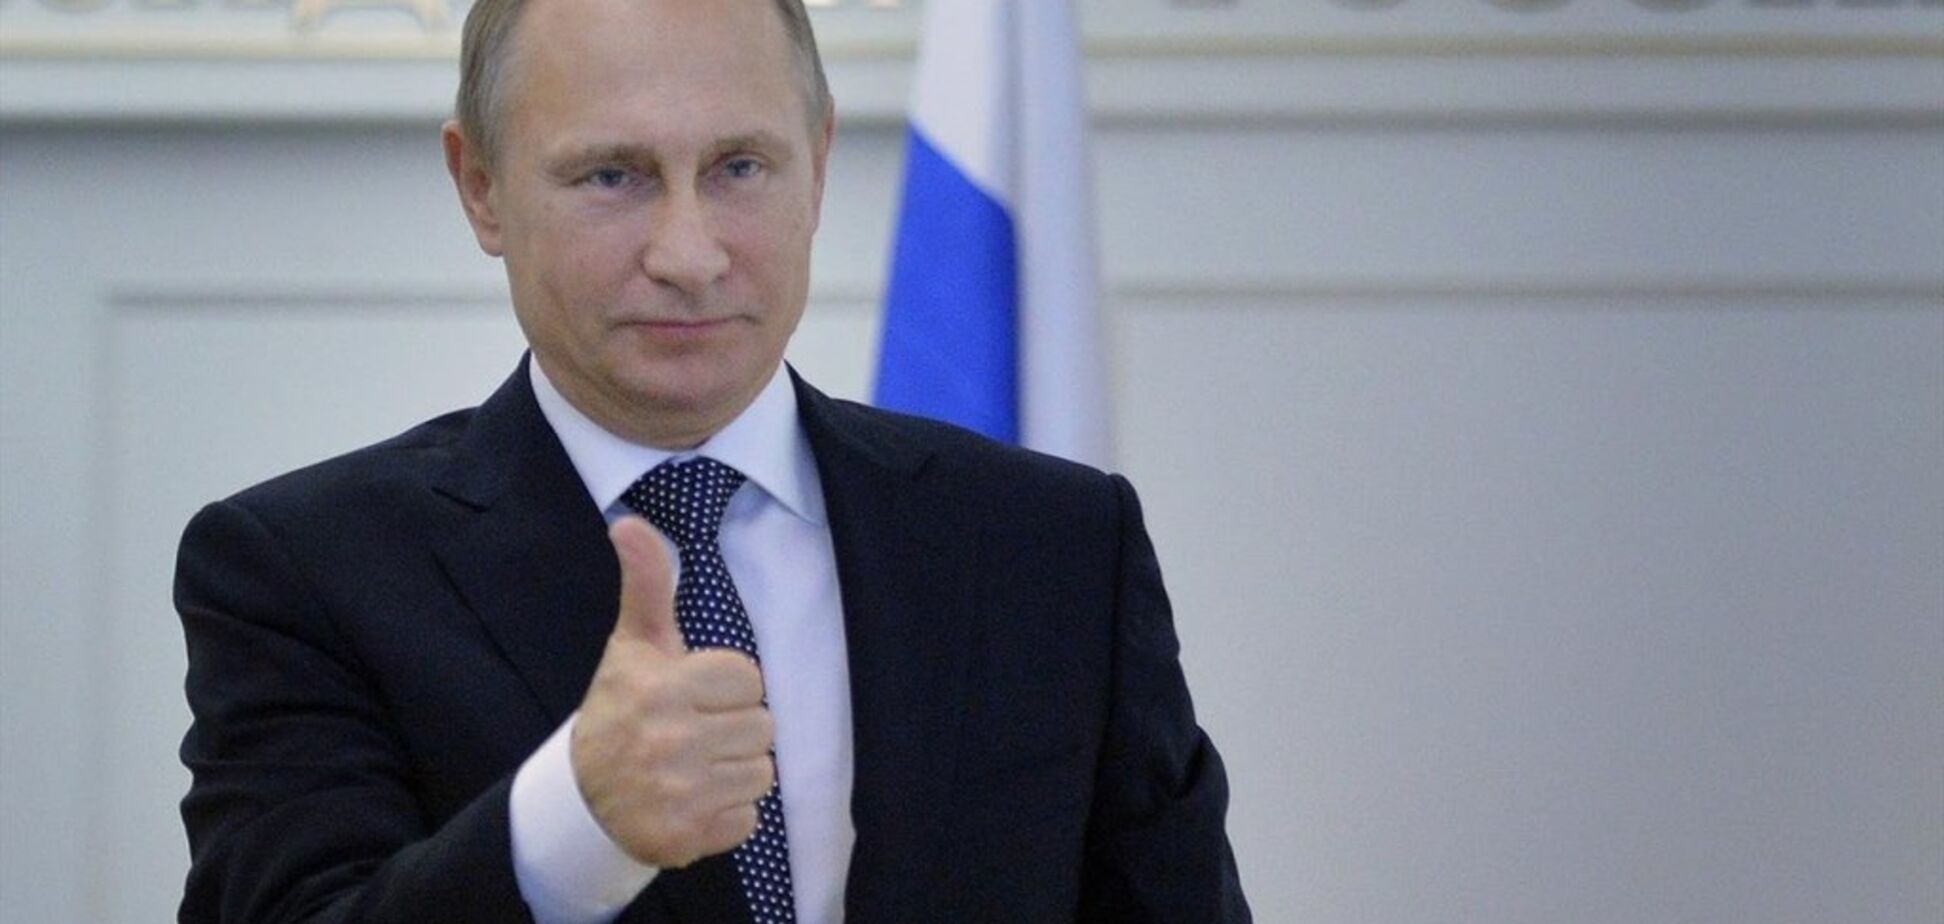 ''Свеженьких подвезли'': новое фото Путина с ''массовкой'' высмеяли в сети